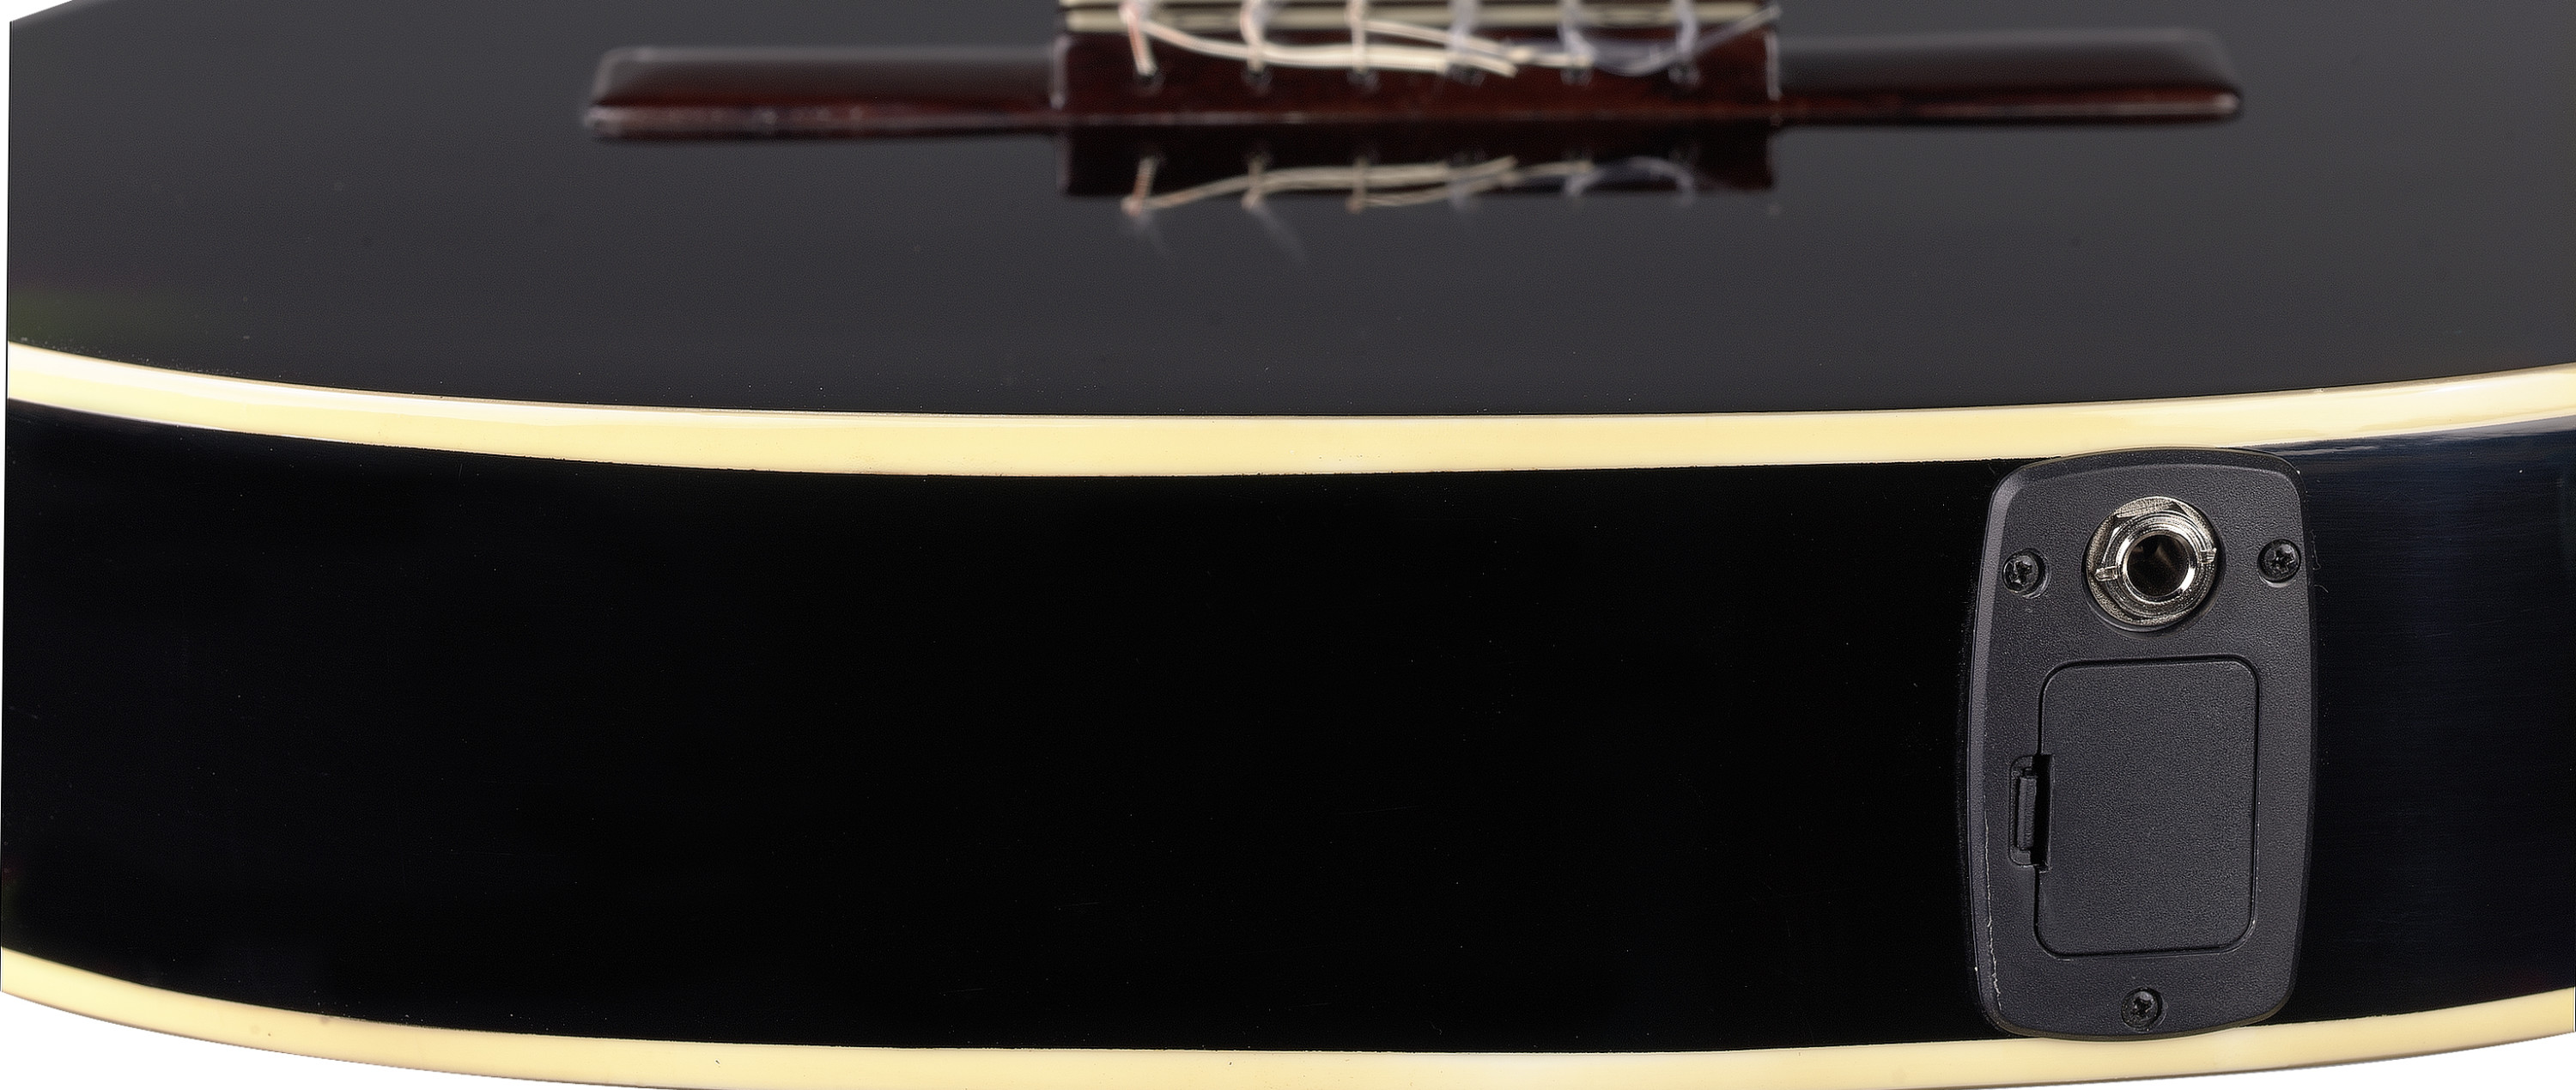 Stagg C546tce Bk Cw Epicea Catalpa - Black - Klassieke gitaar 4/4 - Variation 2